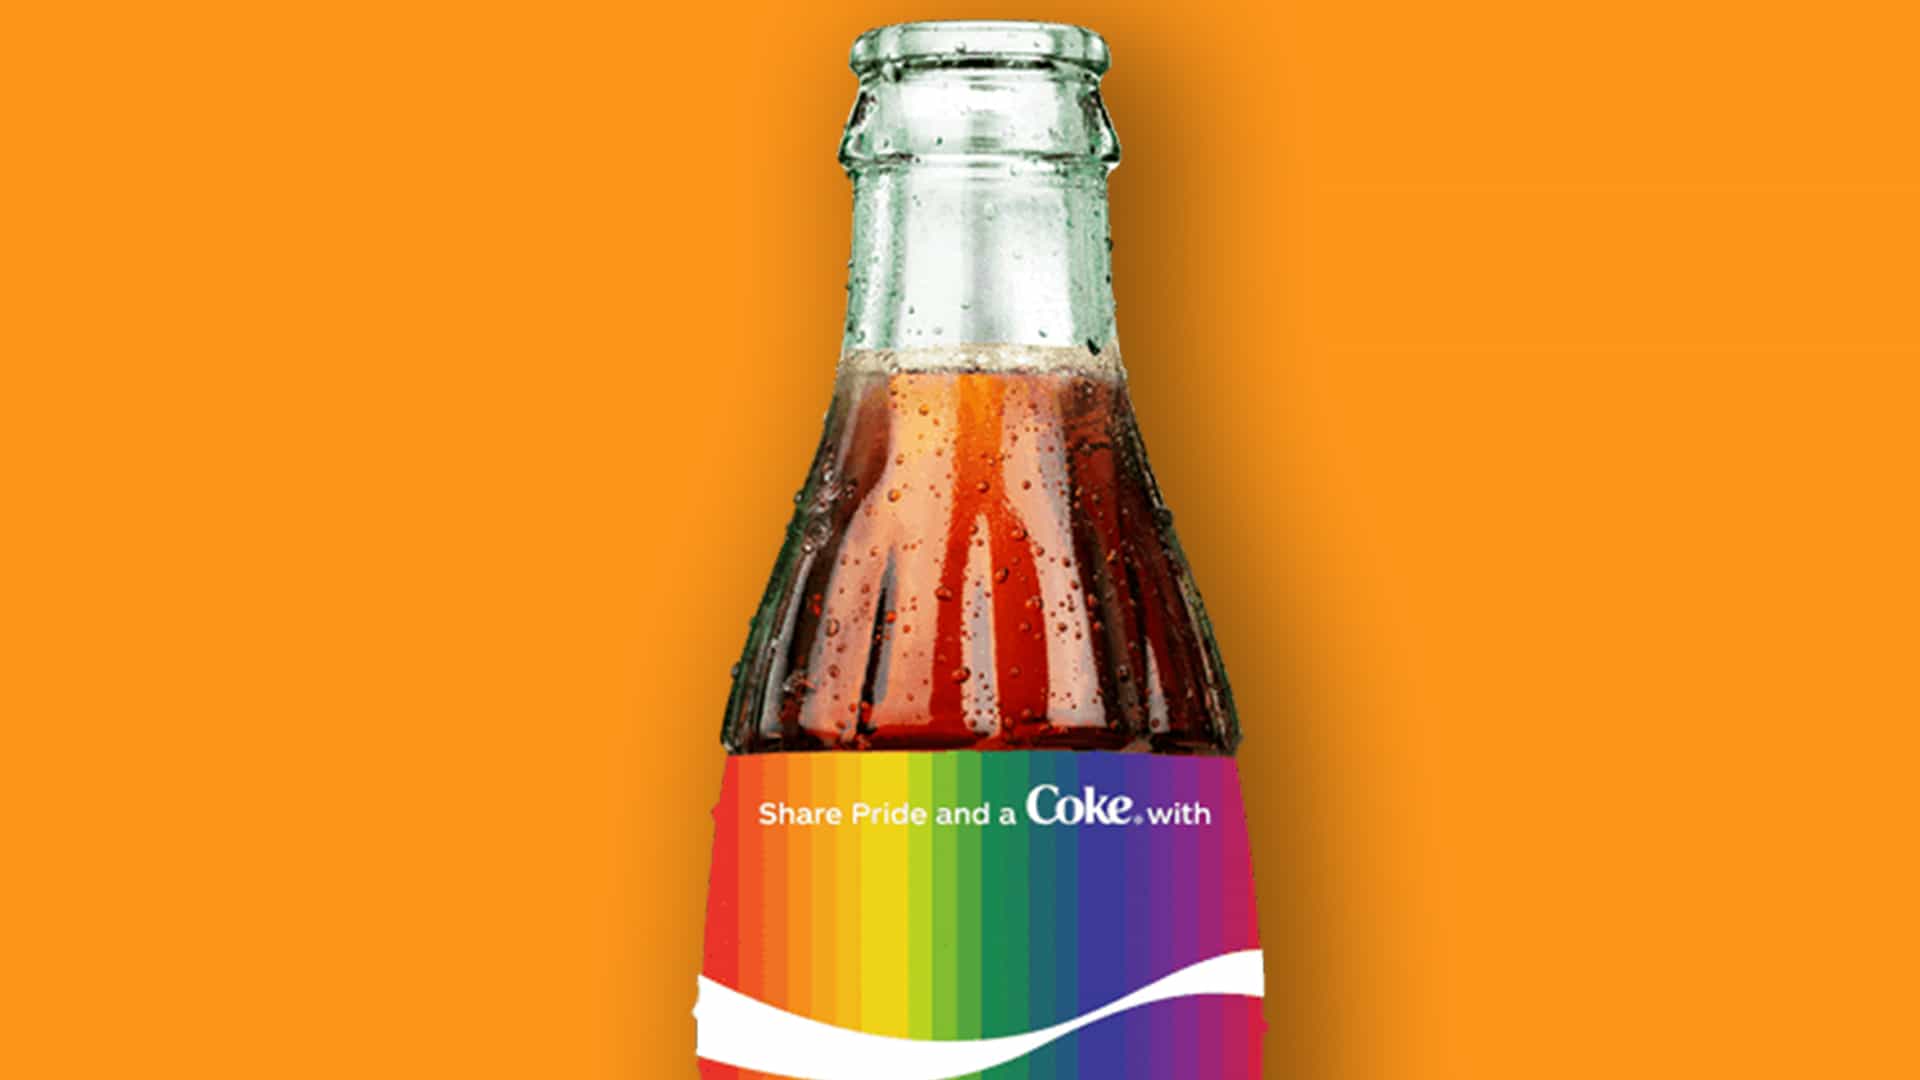 Vergonzoso fracaso en el diseño de Coca-Cola desconcierta a Internet